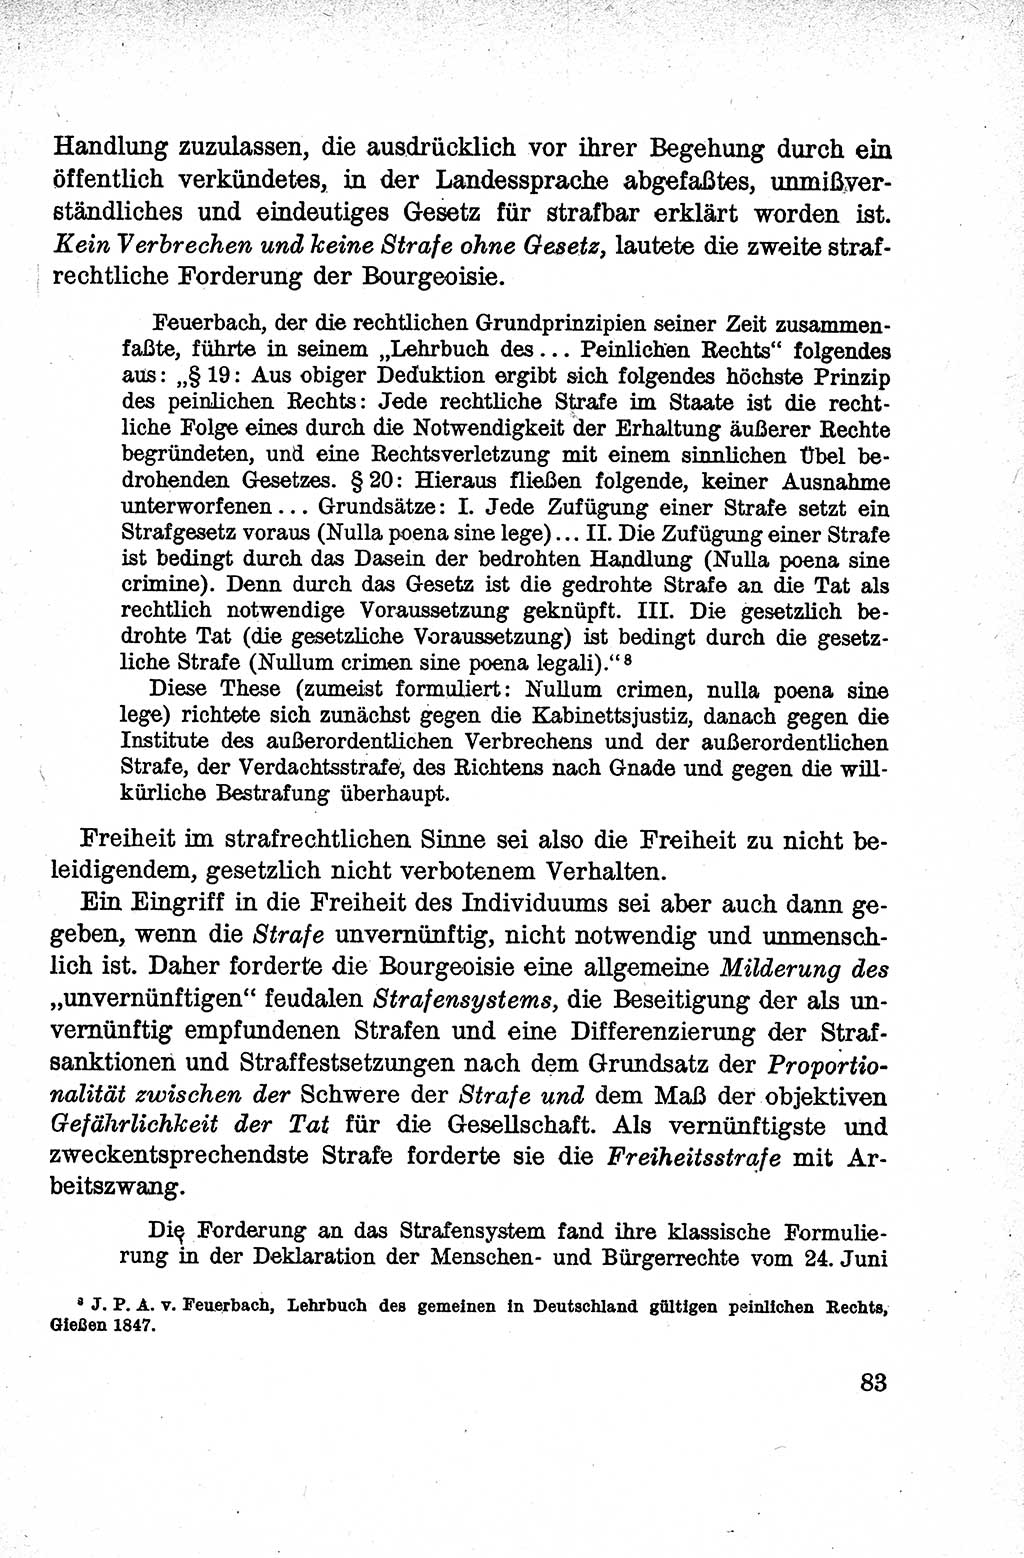 Lehrbuch des Strafrechts der Deutschen Demokratischen Republik (DDR), Allgemeiner Teil 1959, Seite 83 (Lb. Strafr. DDR AT 1959, S. 83)